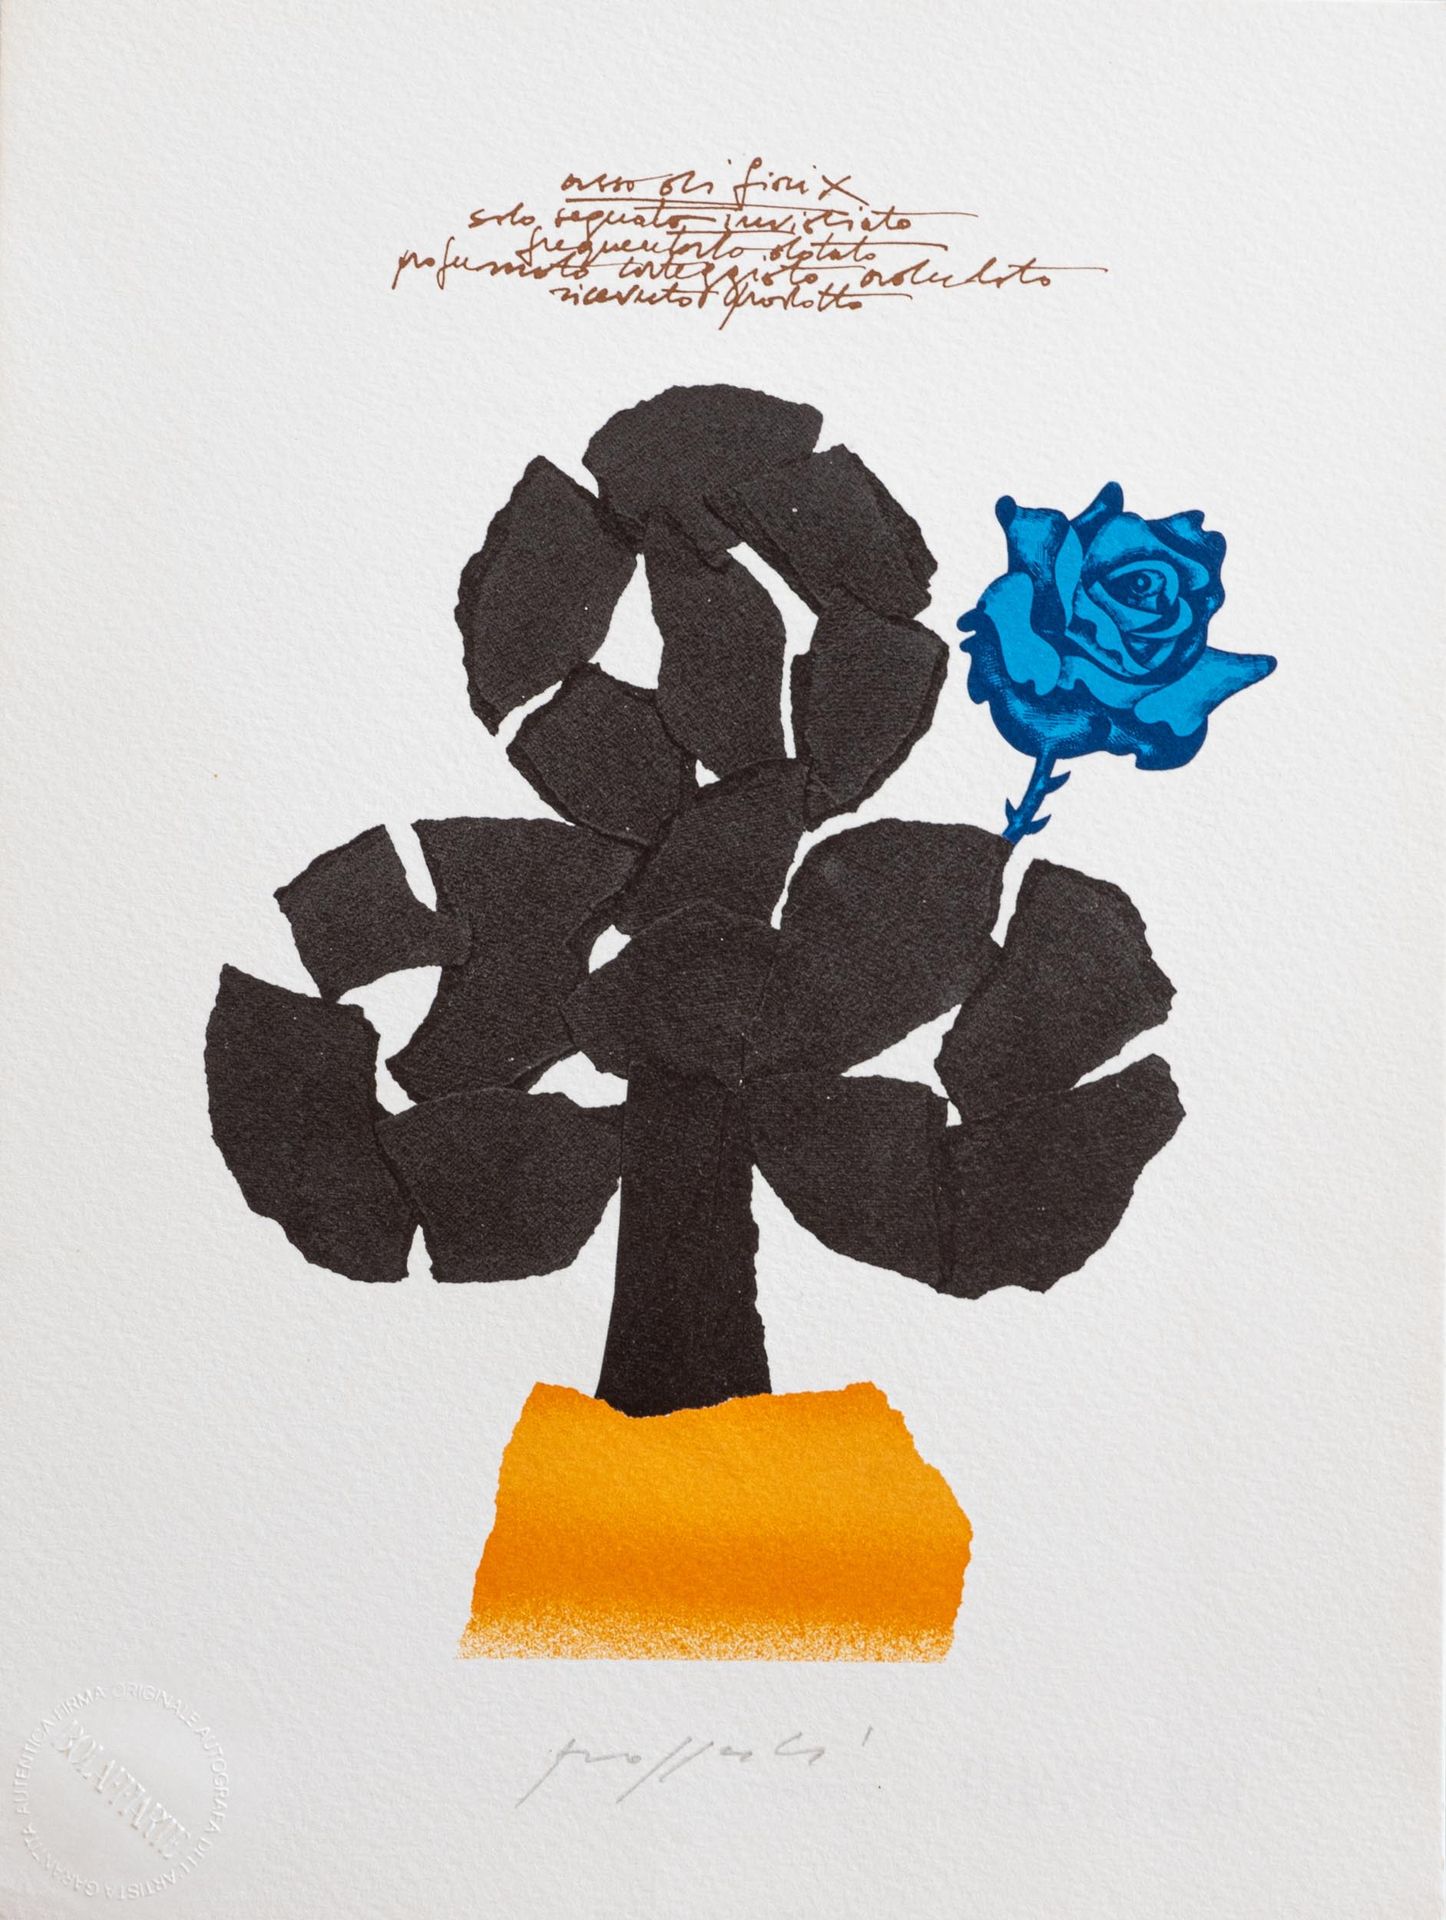 CONCETTO POZZATI (Vo 1935 - Bologna 2017) Blumen für die Serie "BOLAFFIARTE PLAY&hellip;